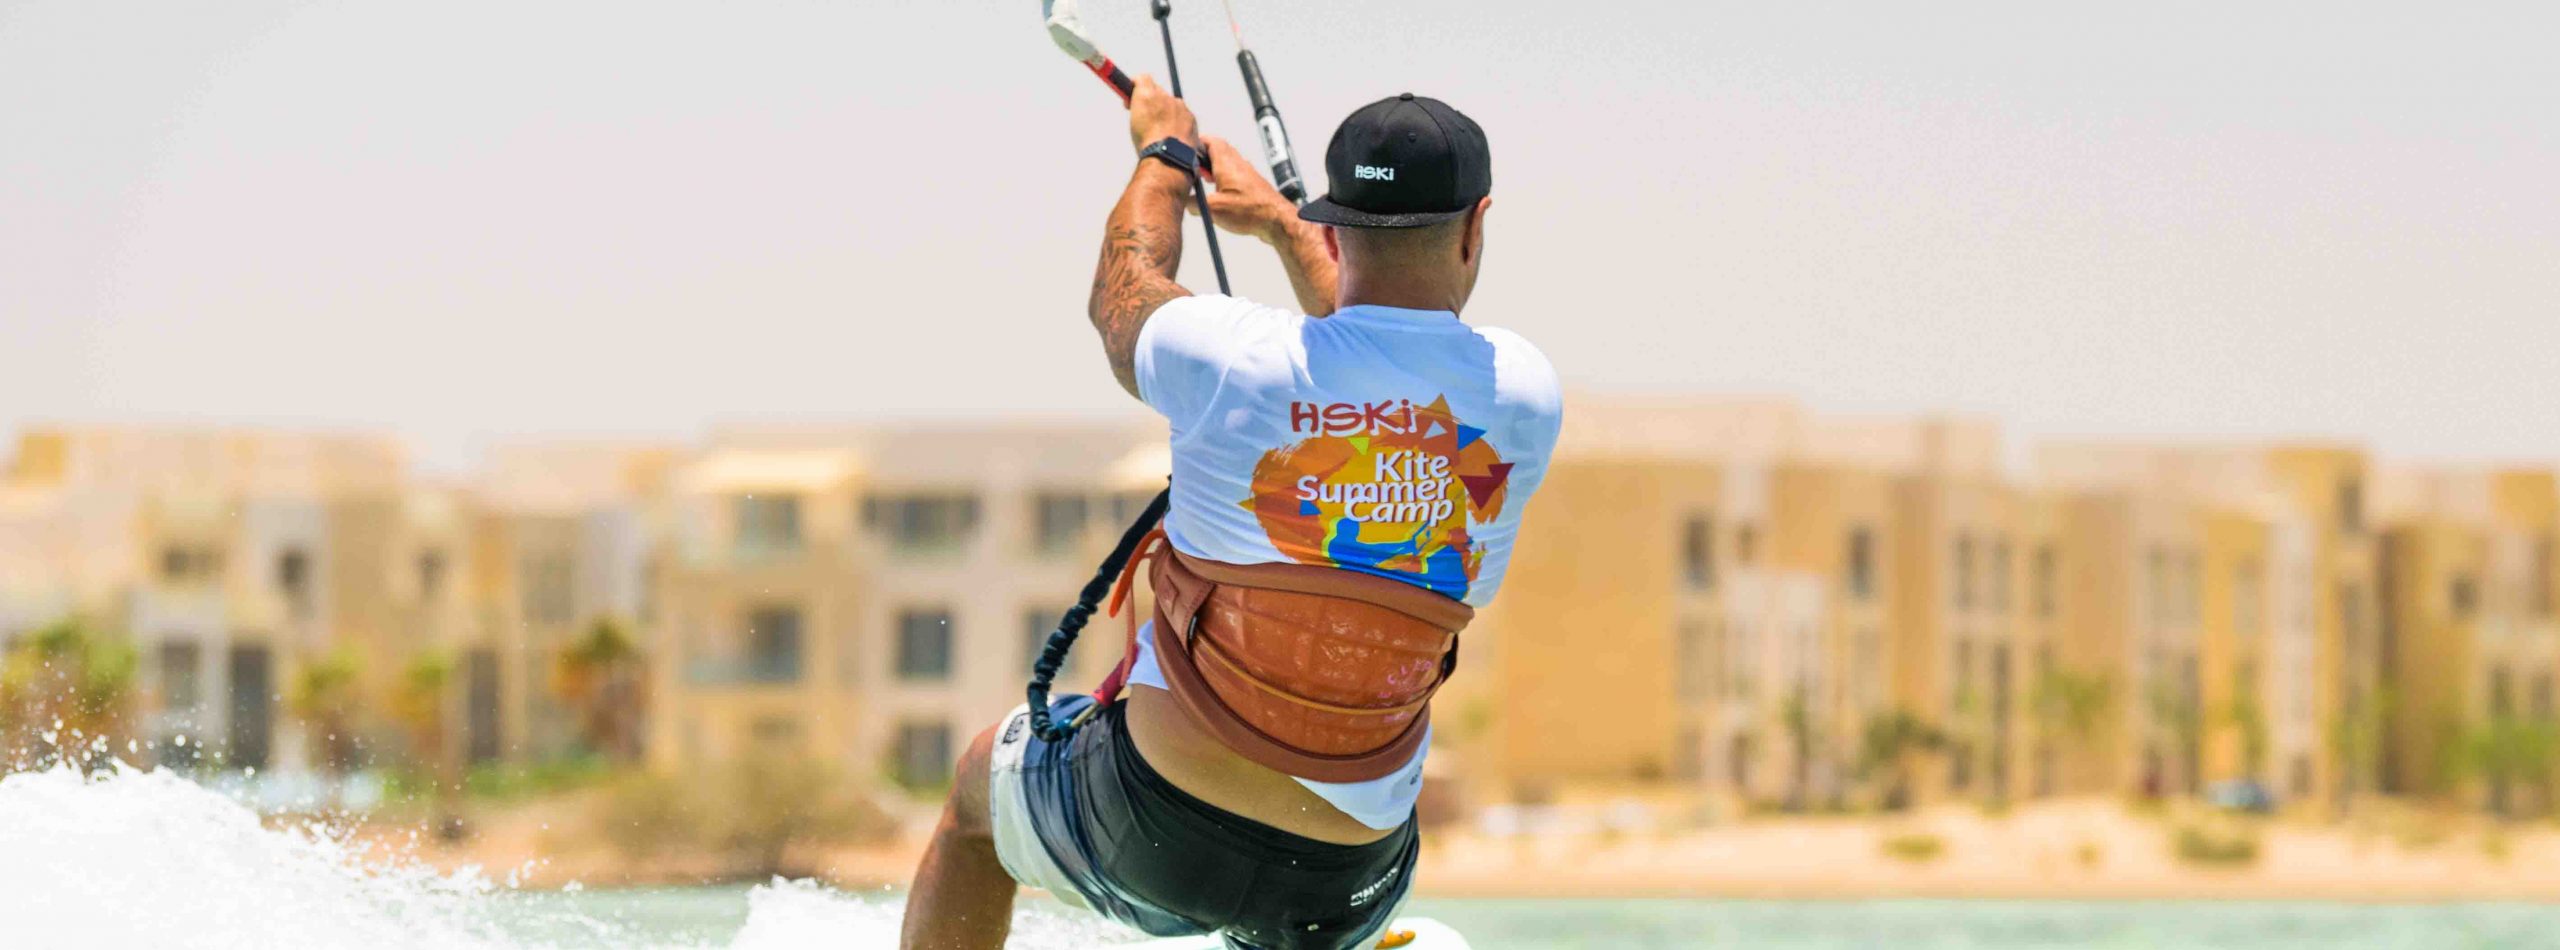 SprawdÅº kitesurfing Egipt szkolenie kurs EL Gouna